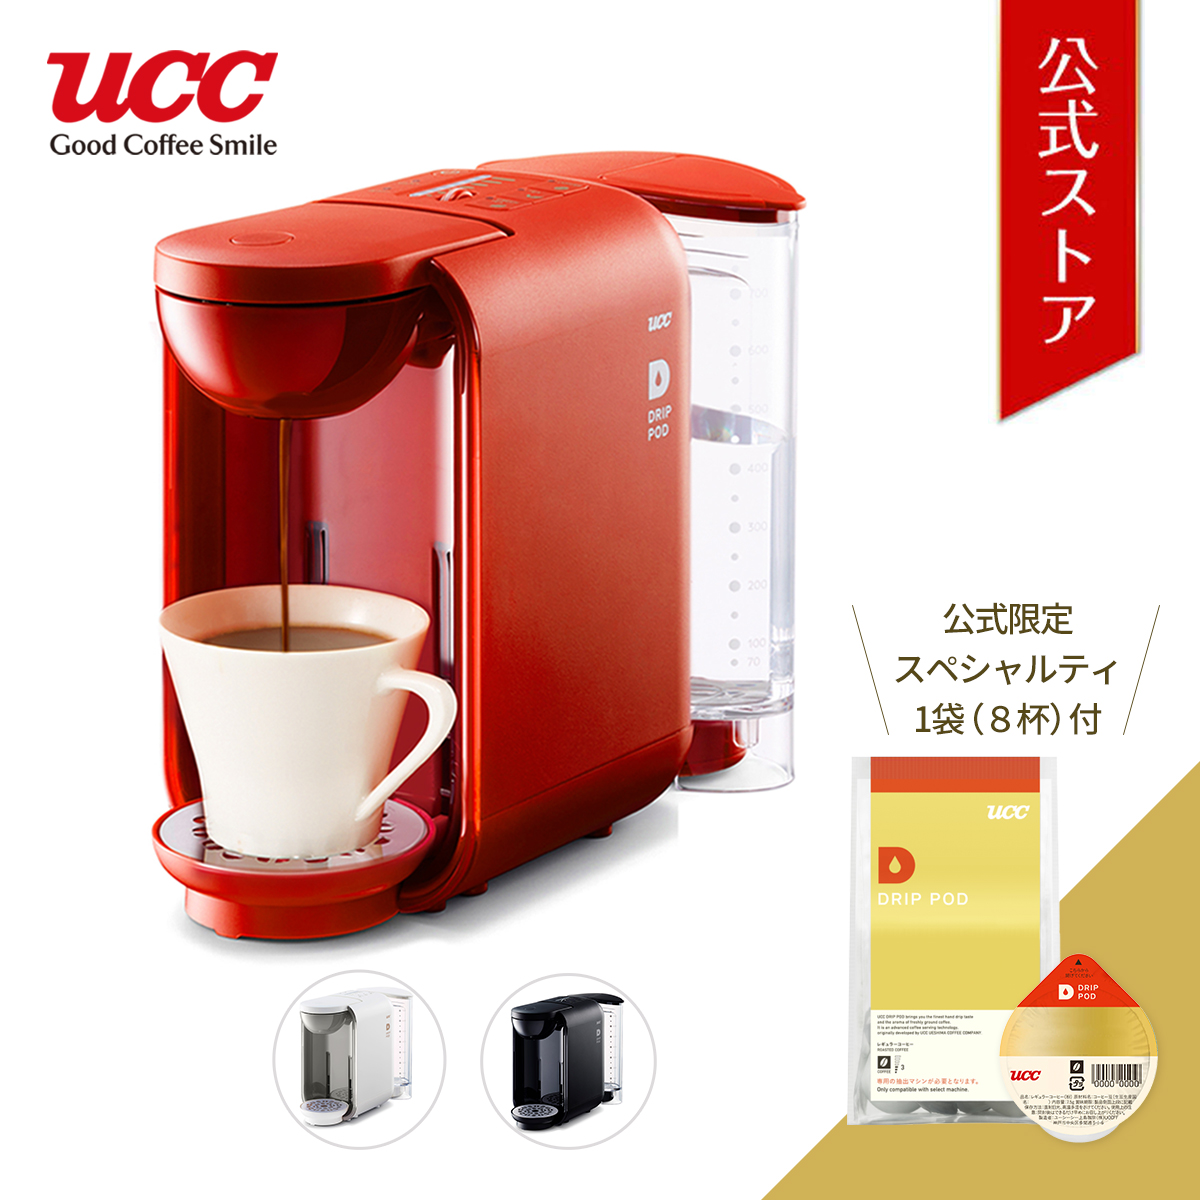 Podドリップマシン Drip Ucc 1080円分の公式限定ポッド付き 送料無料 Dp2 ドリップポッド Drippod カプセル式コーヒーメーカー Ucc コーヒーメーカー カプセル カプセルコーヒー おしゃれ レギュラーコーヒー コーヒーマシン コーヒーメーカー 日本初の Makan